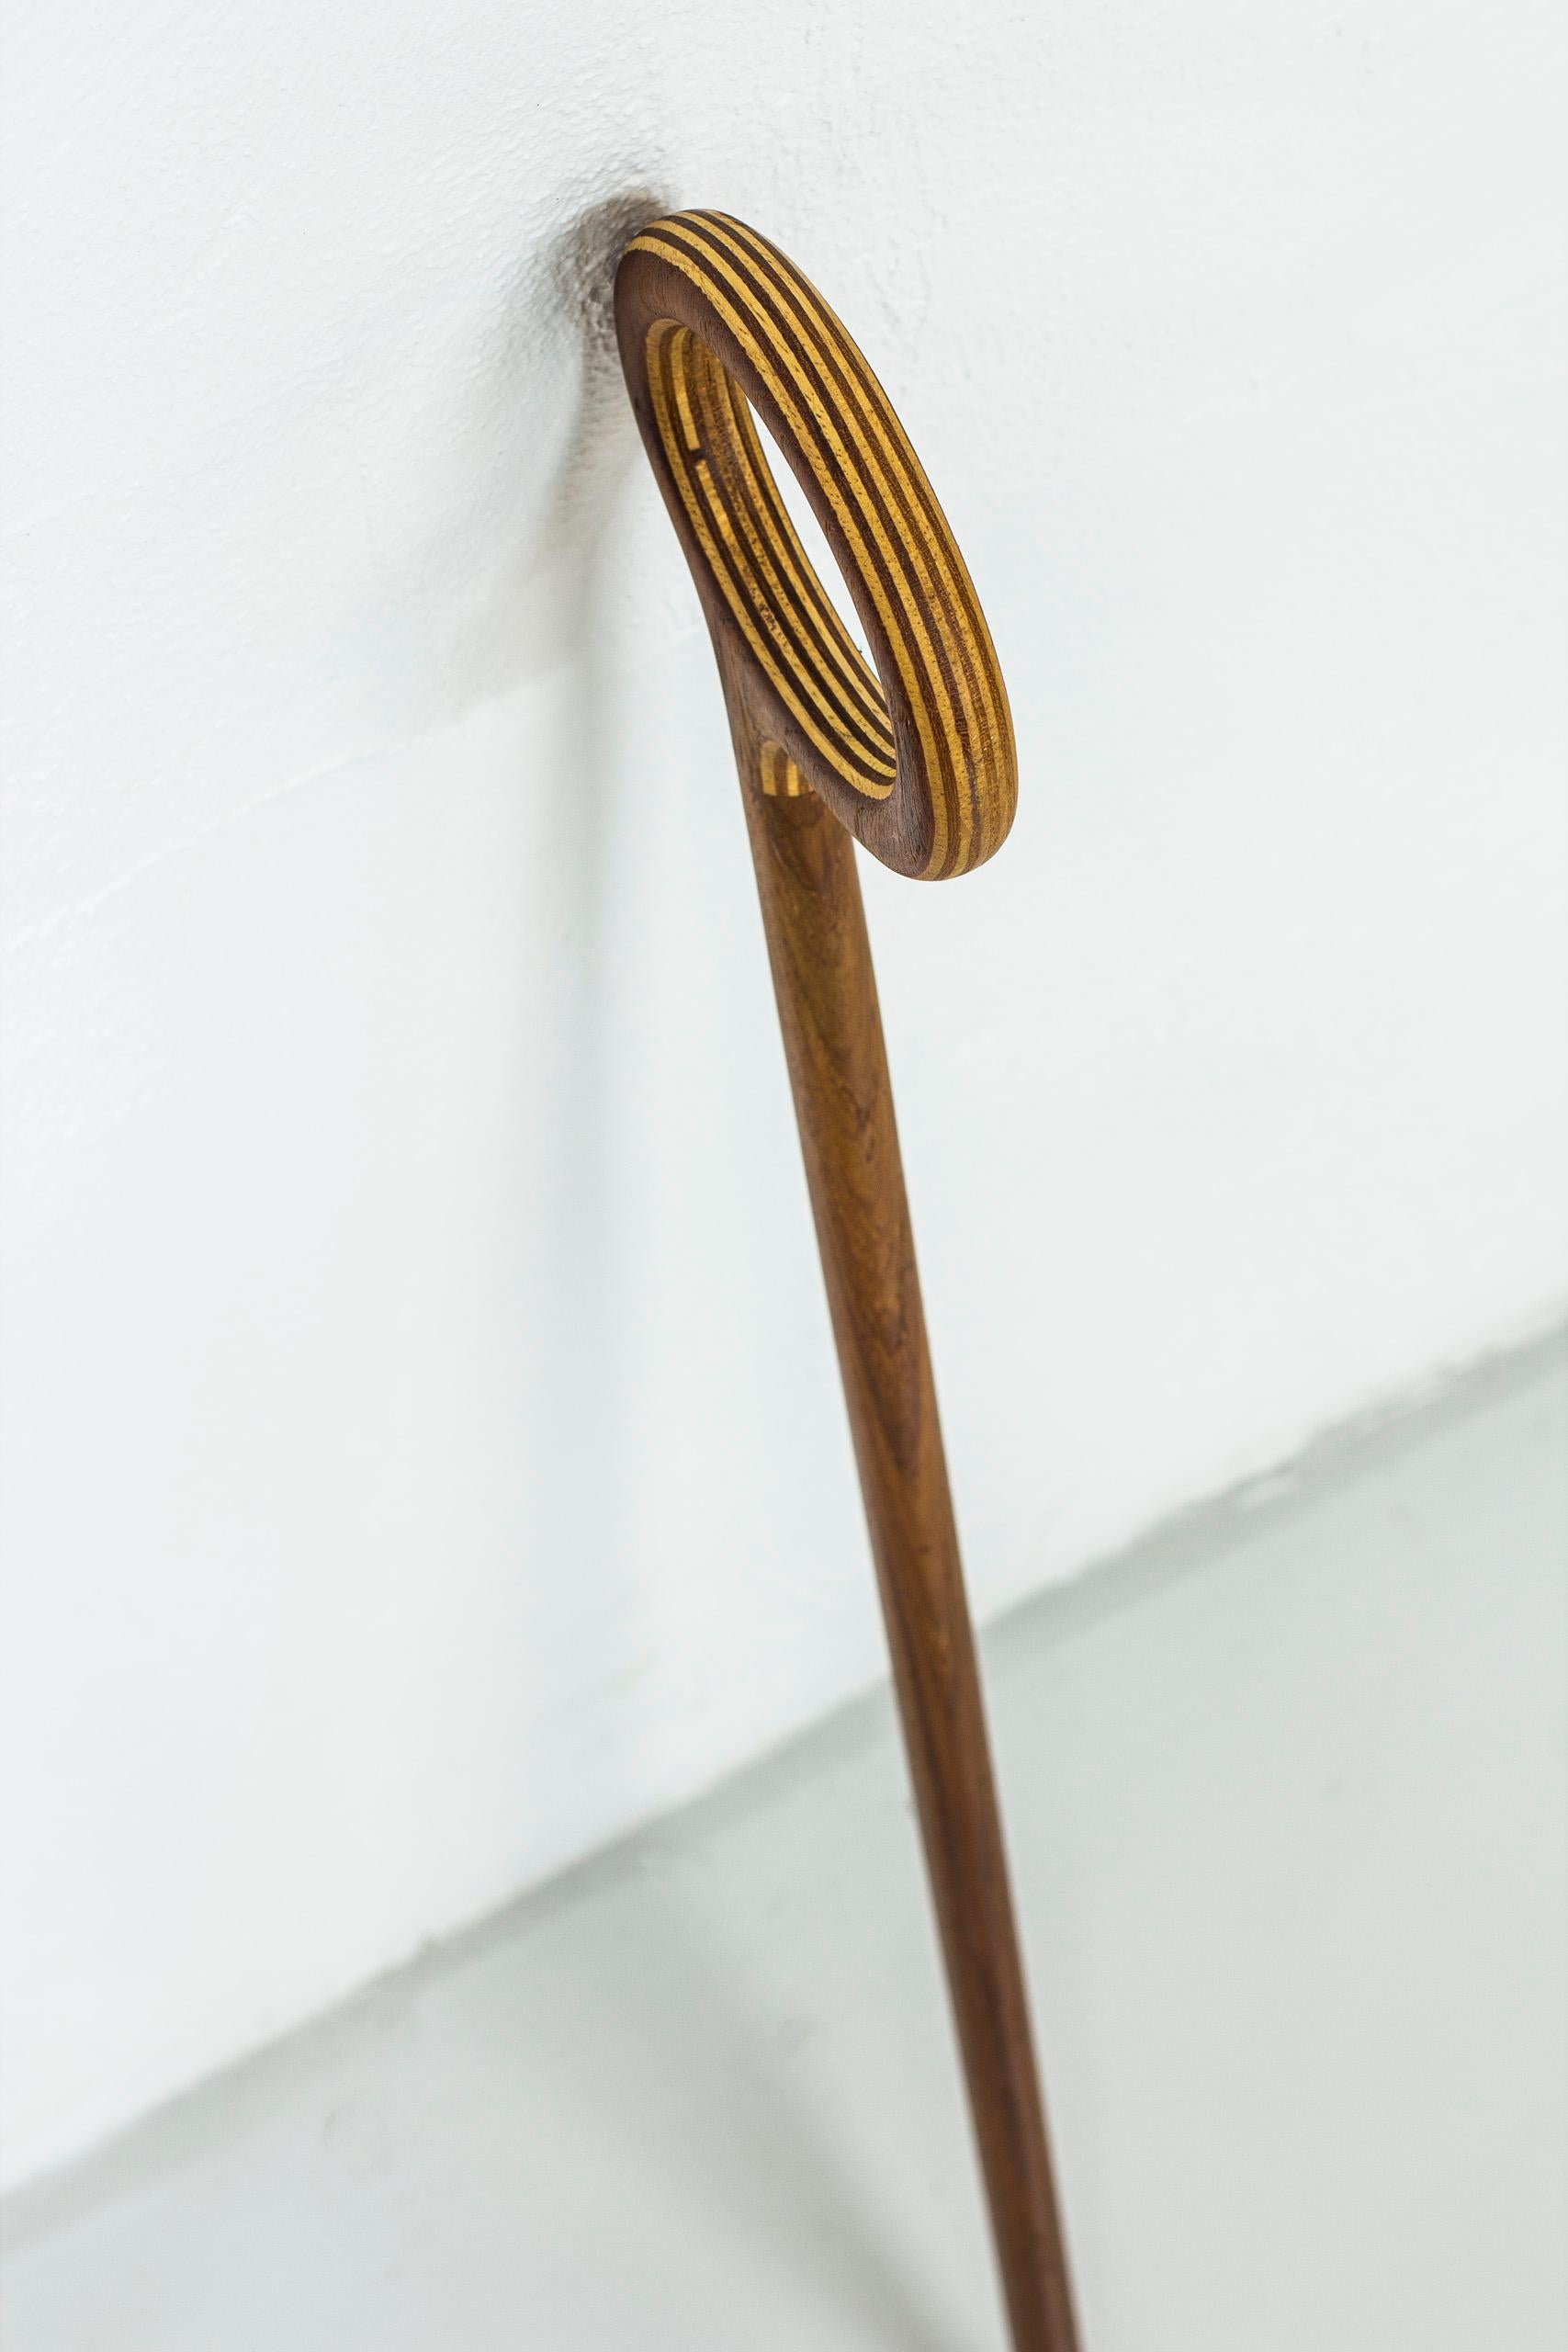 Scandinavian Modern Walking Stick by Nanna Ditzel for Kolds Saavvaerk, Denmark, 1950s .2